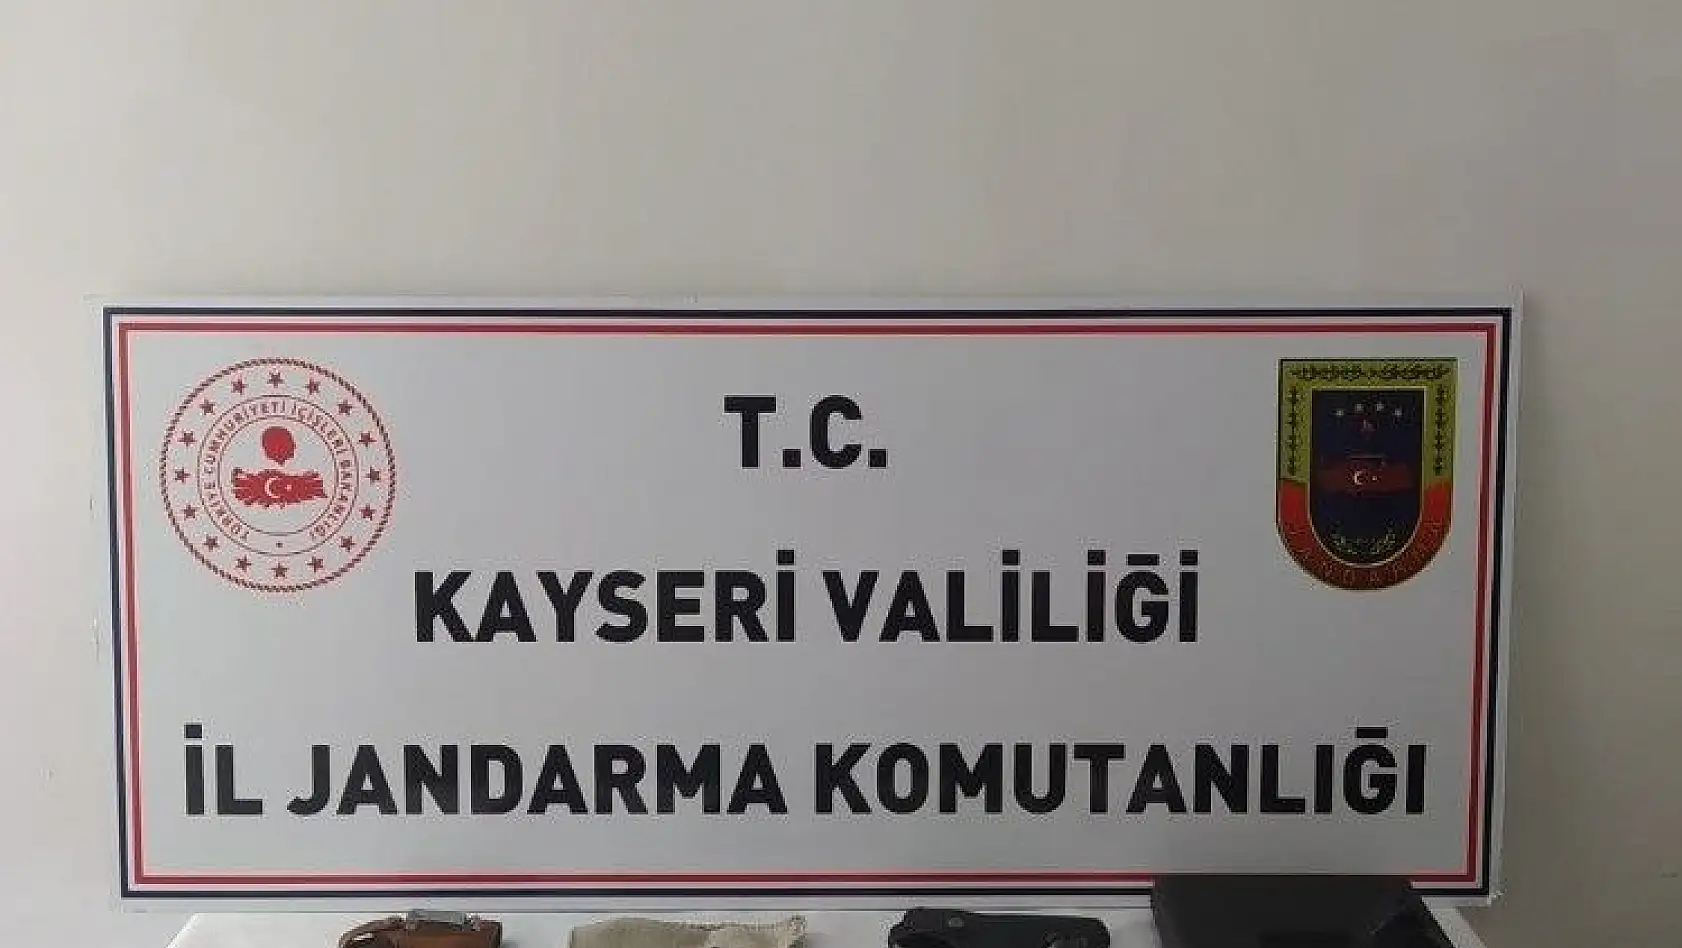 Kayseri'de ruhsatsız tabanca operasyonu: 2 gözaltı
